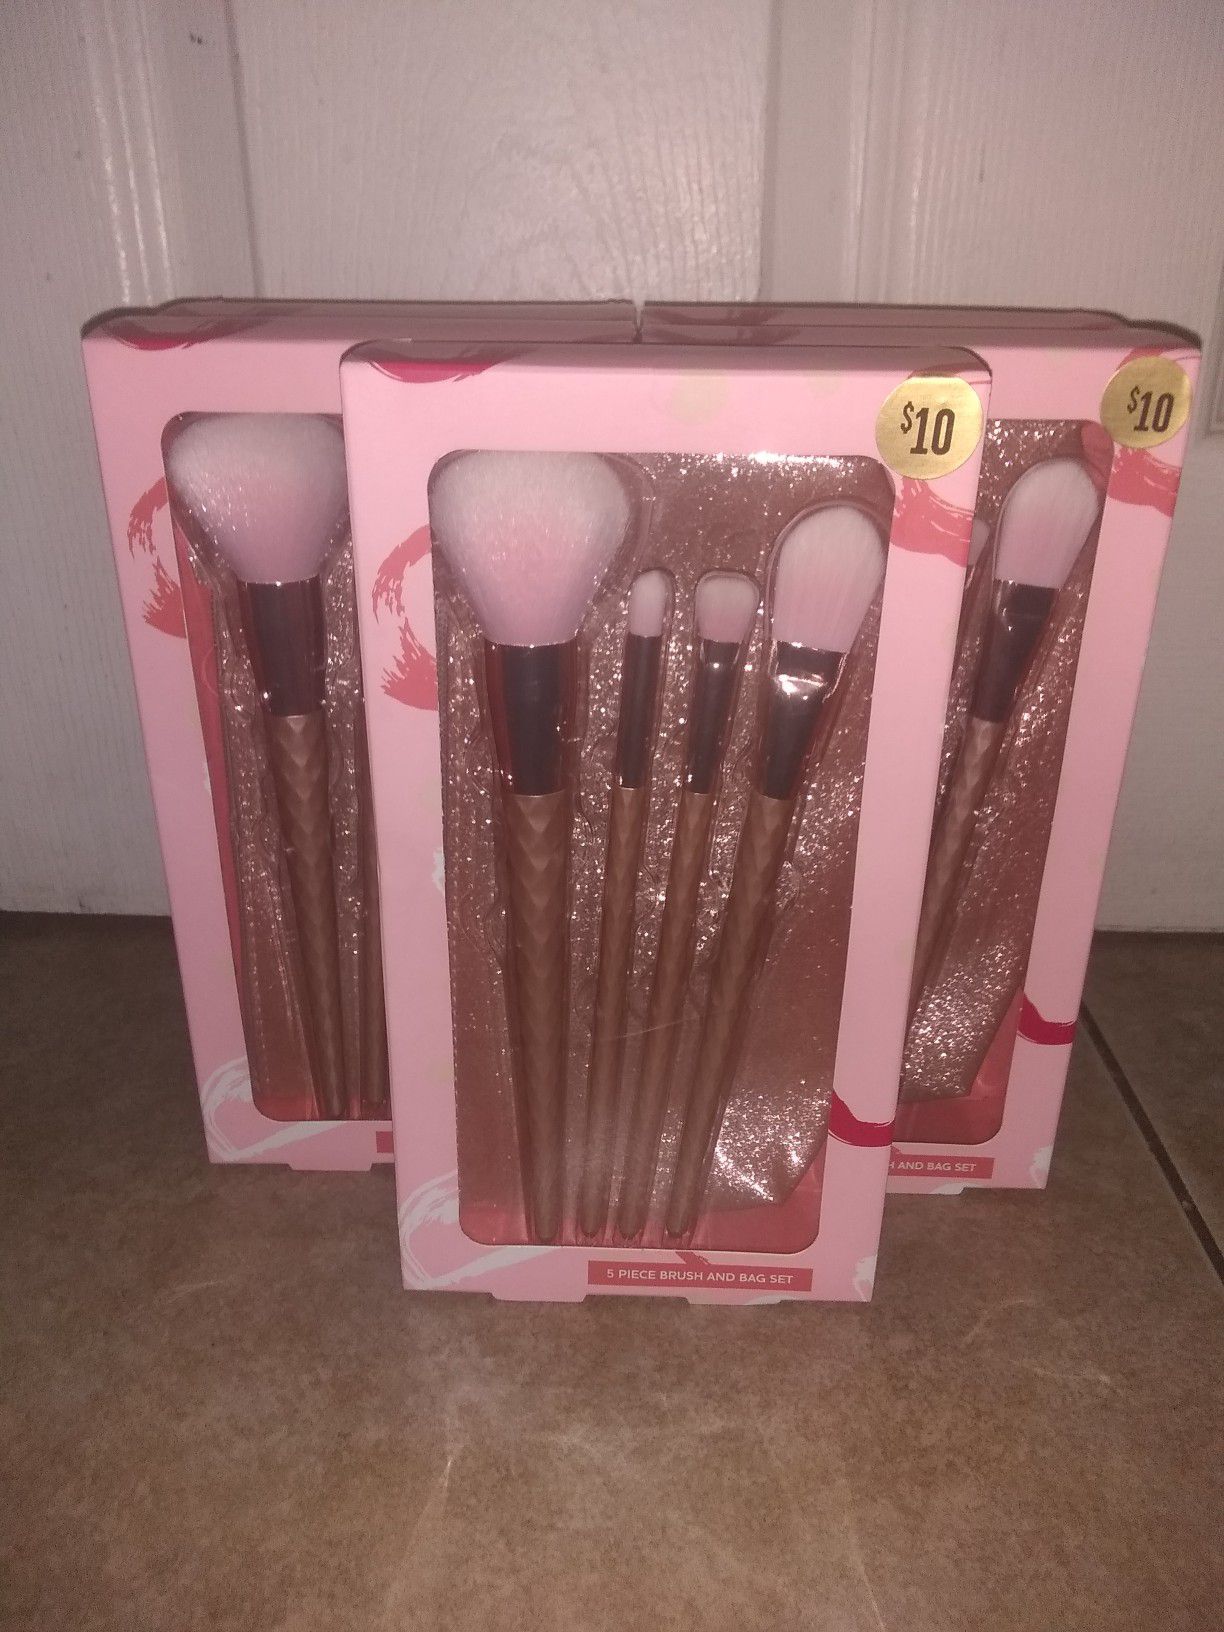 Makeup Brushes $4